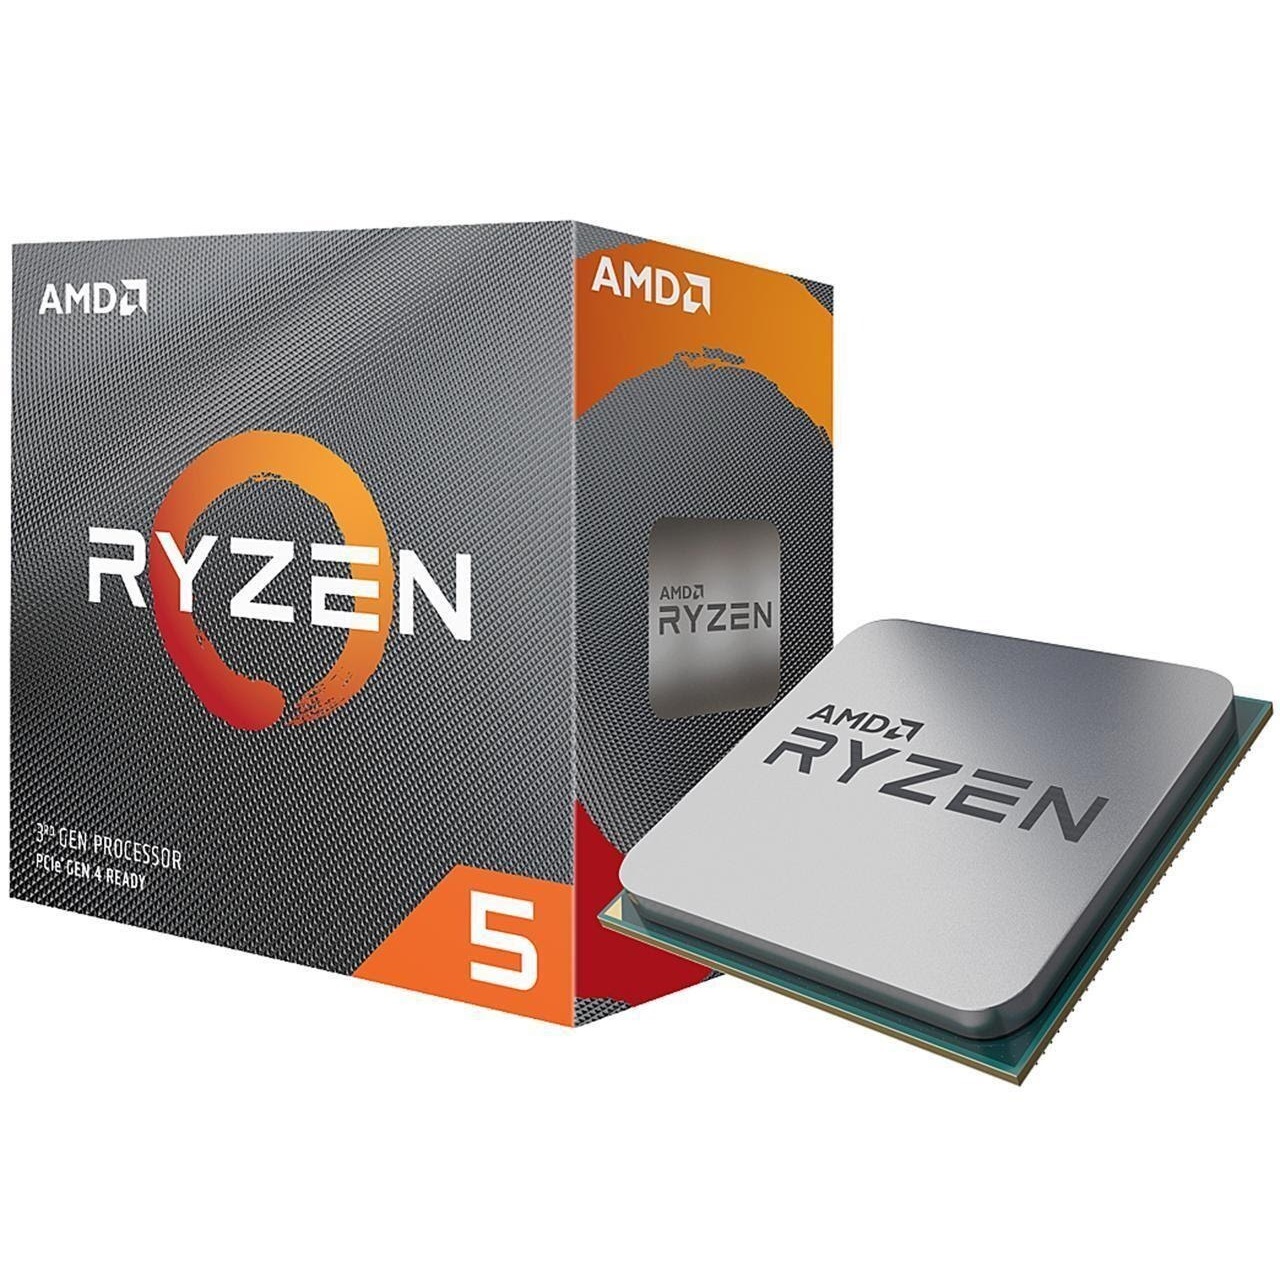 Bộ Vi Xử Lý CPU AMD Ryzen Processors 5 5600X - Hàng Chính Hãng